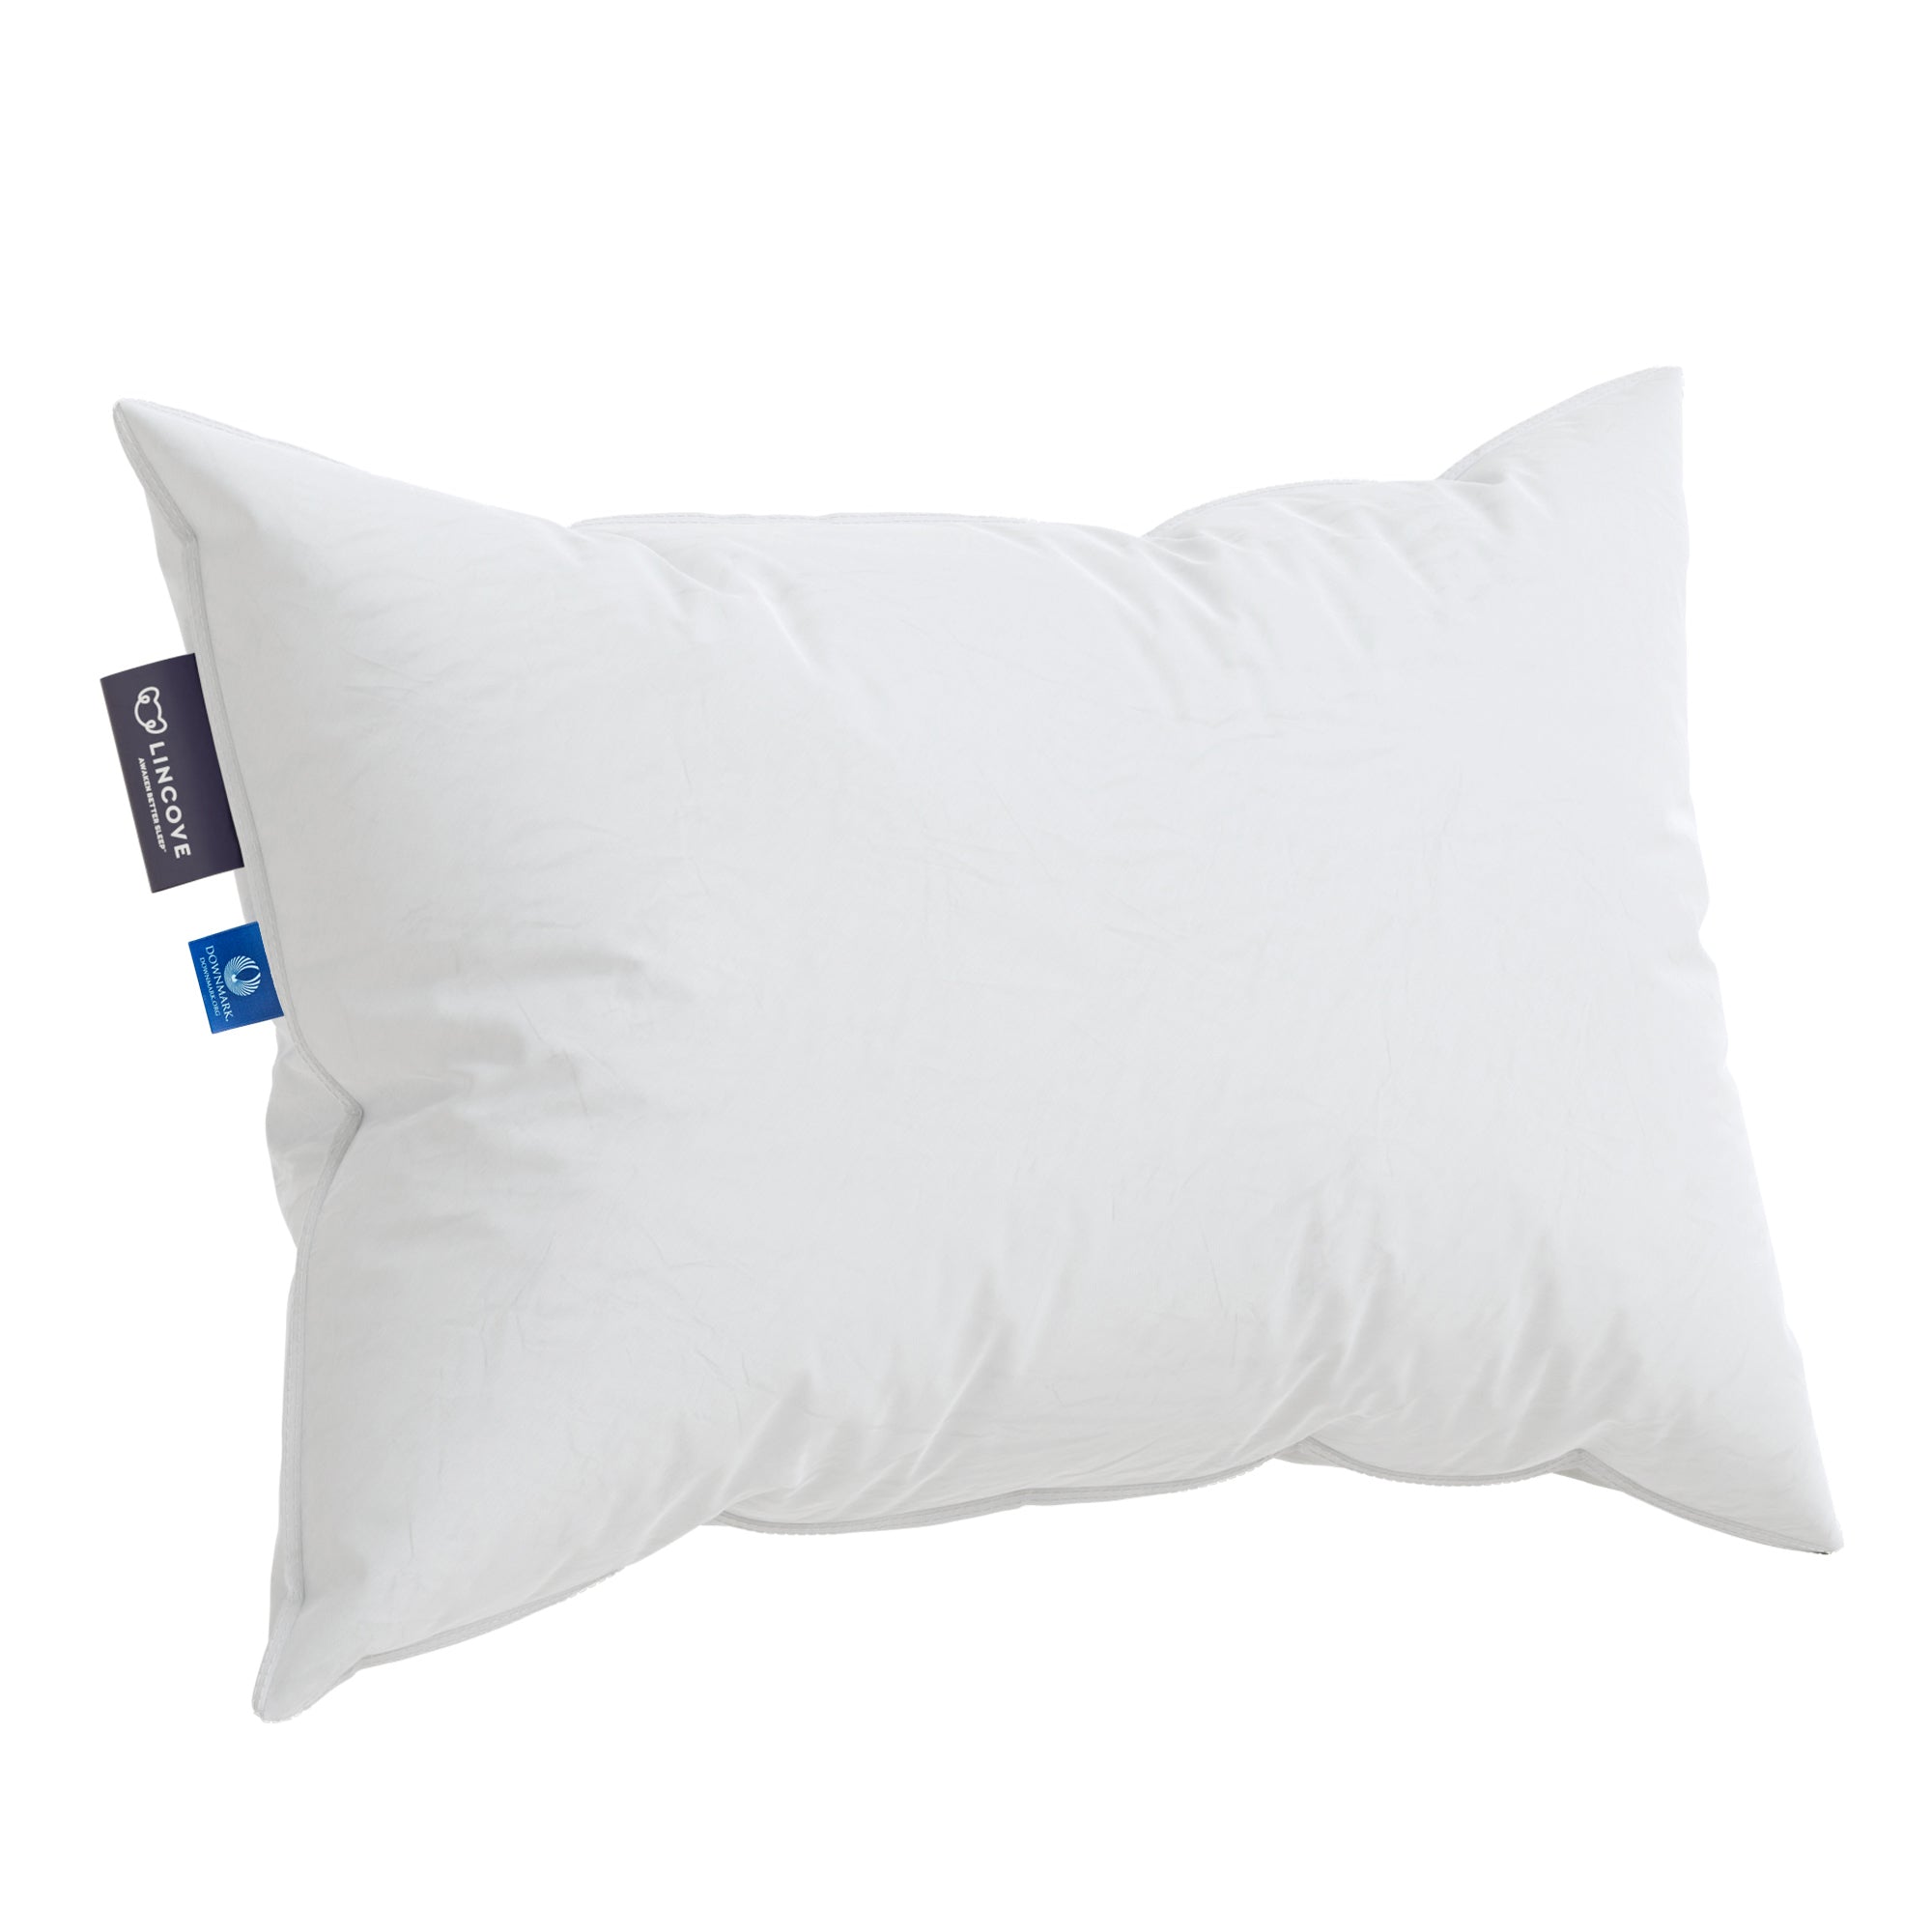 Casper Sleep Down Pillow for Sleeping, Standard, White, Two Pack並行輸入品